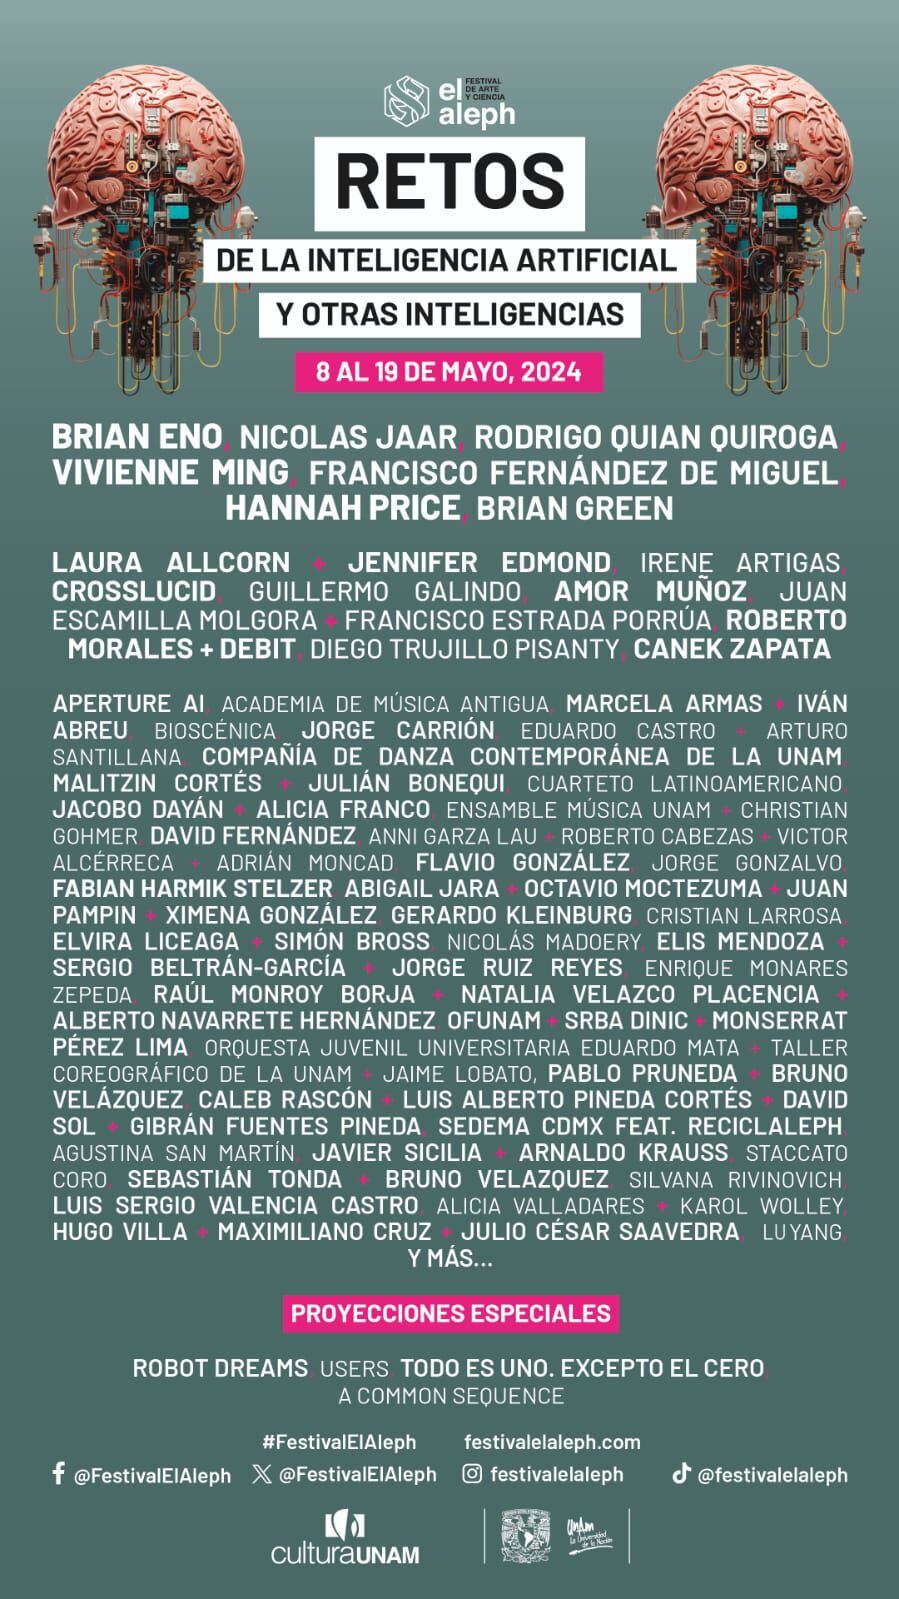 Festival El Aleph de la UNAM traerá a Brian Eno y otros artistas en mayo de 2024